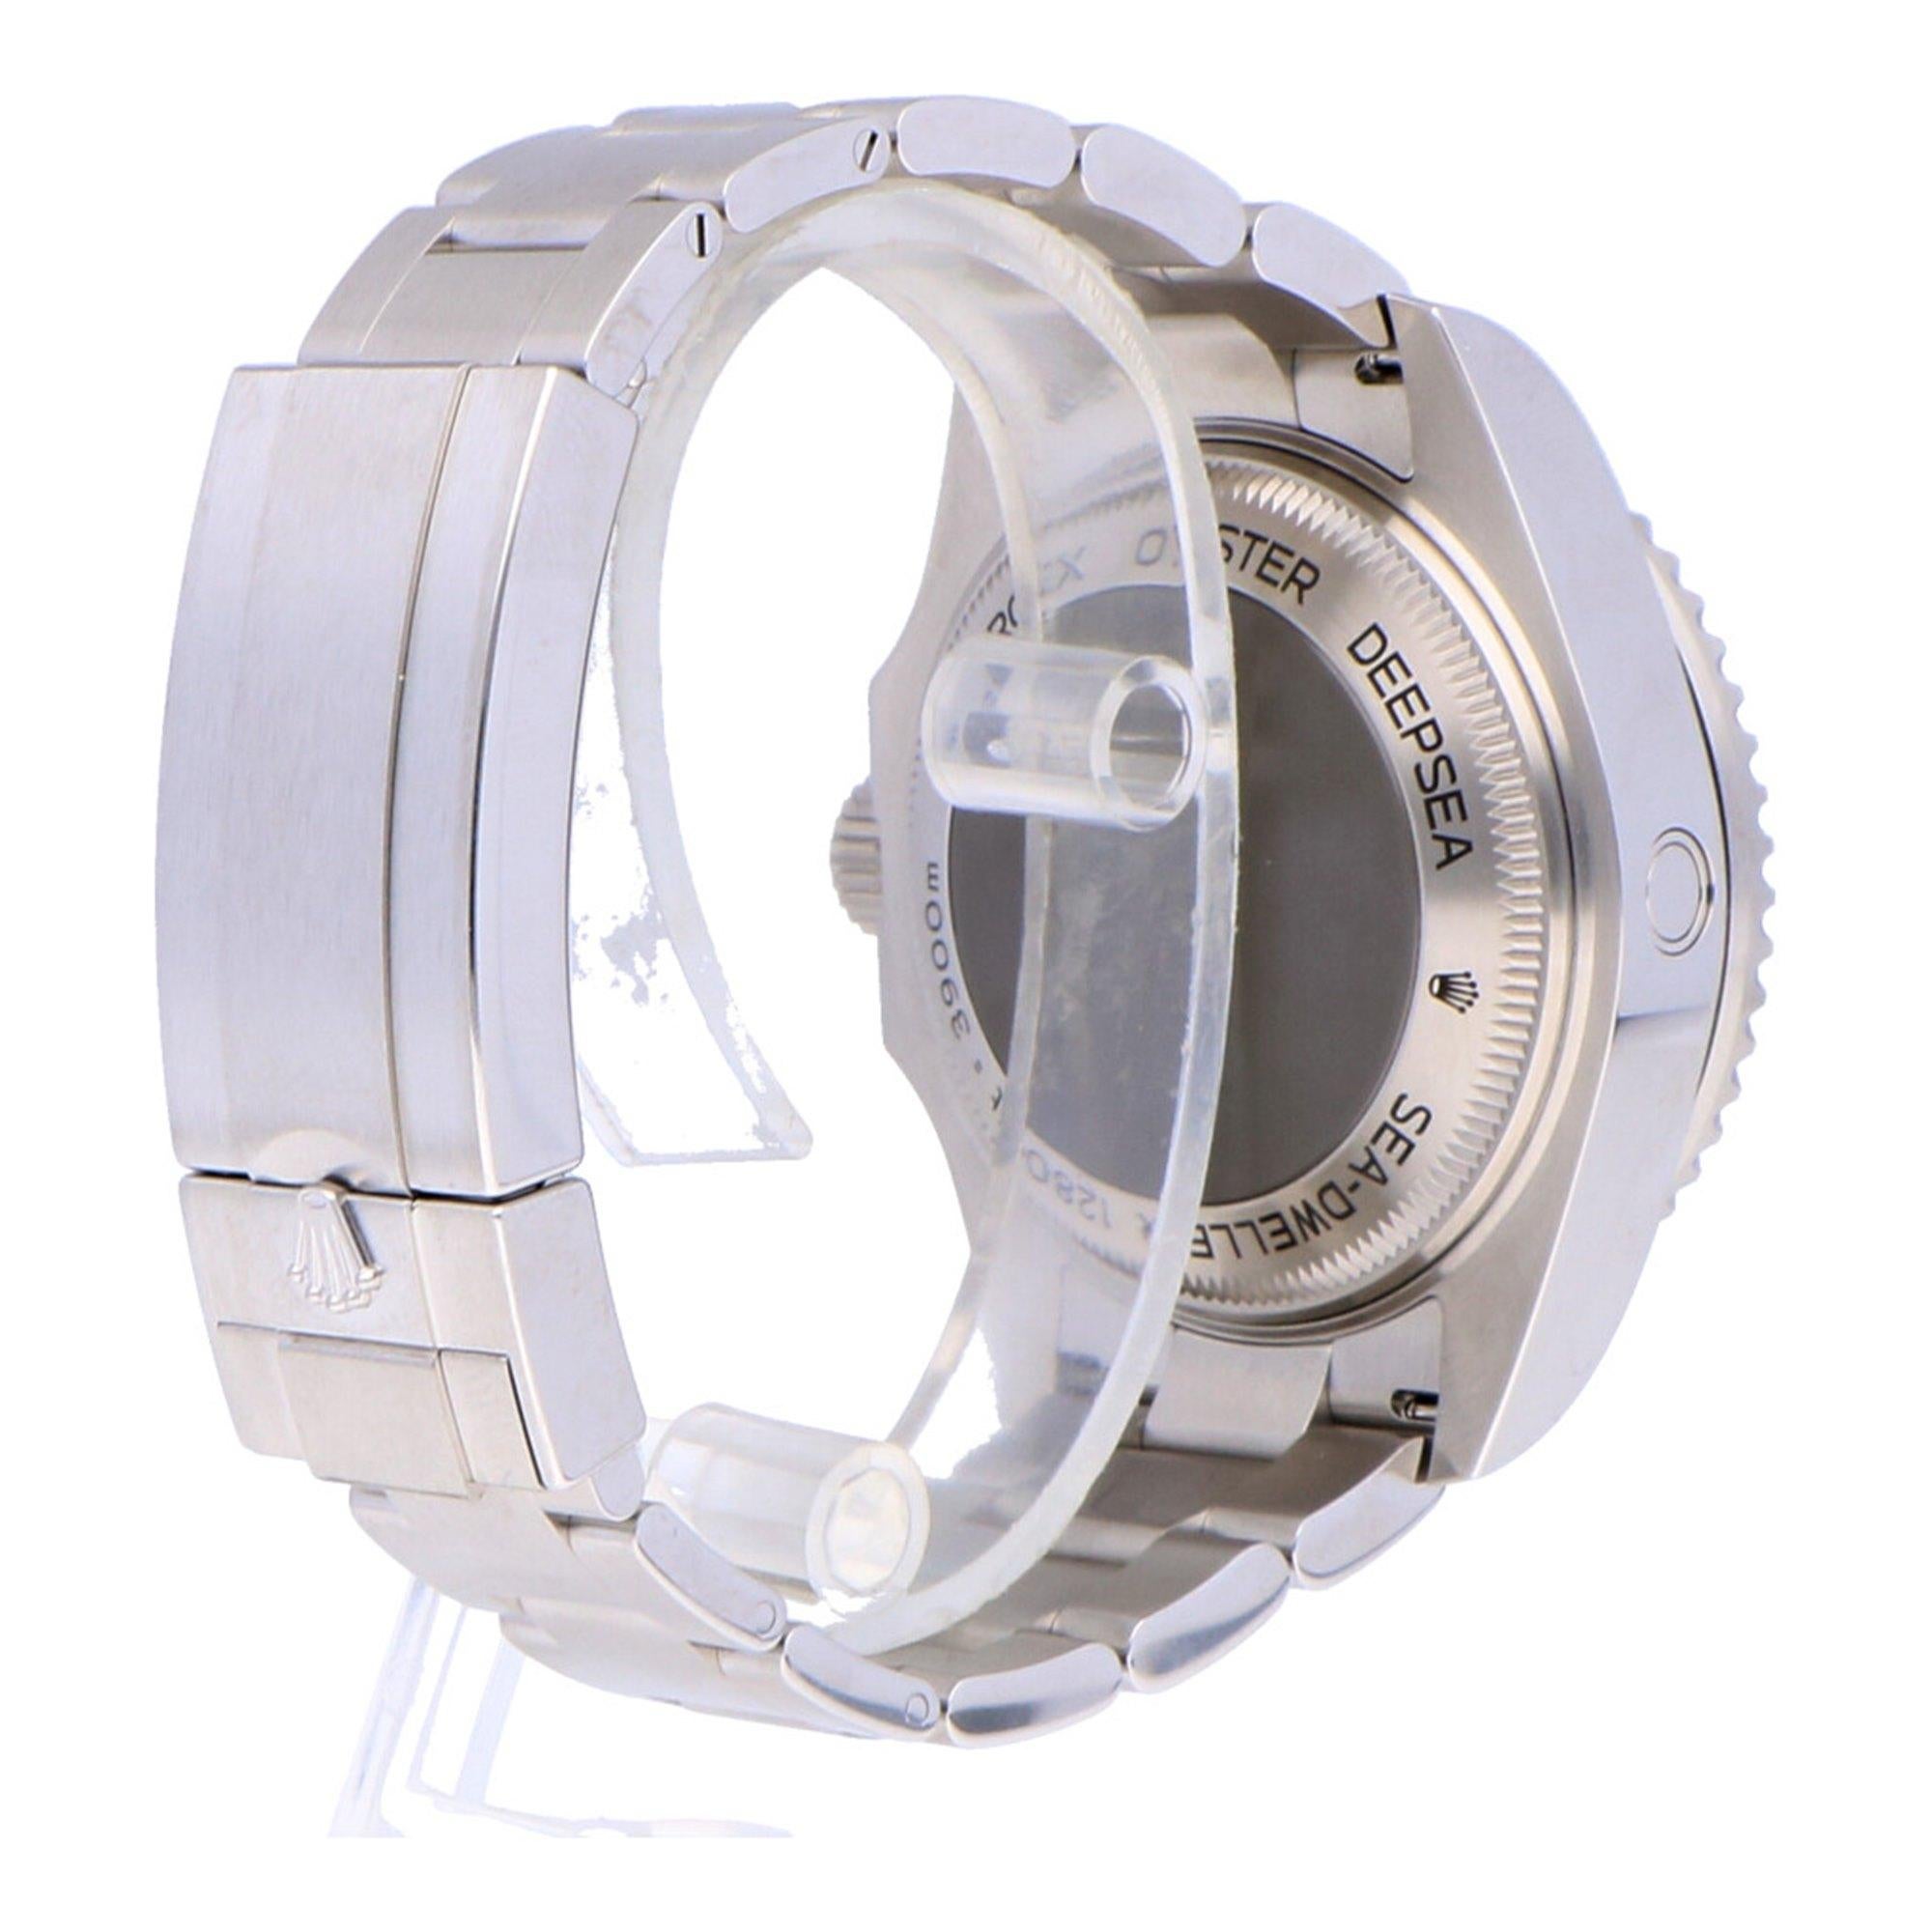 Pre-Owned Rolex Sea-Dweller Deepsea Stainless Steel 126660 Watch 2